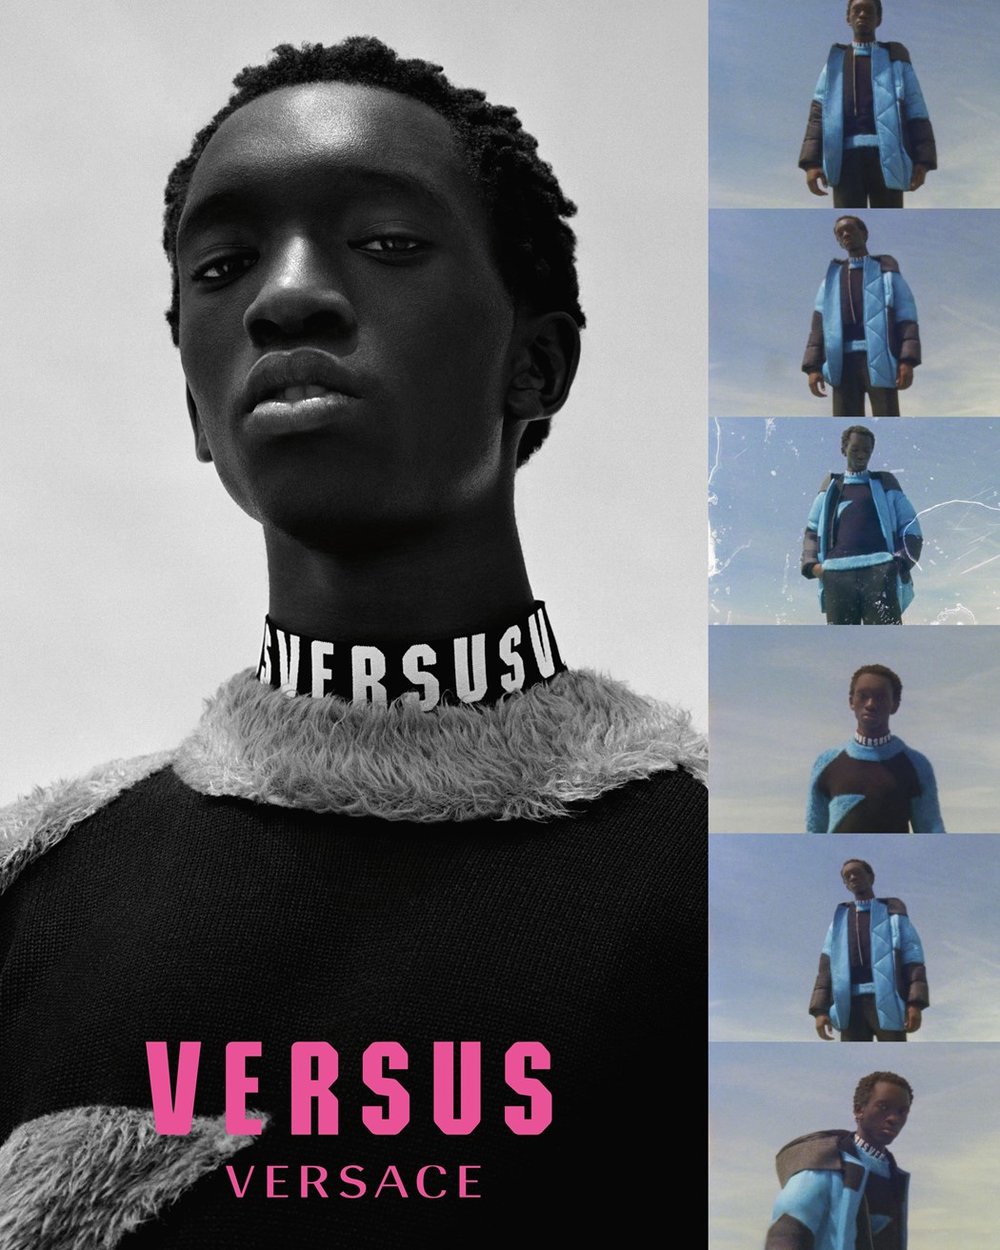 Versus Versace, Inverno 18 / Reprodução